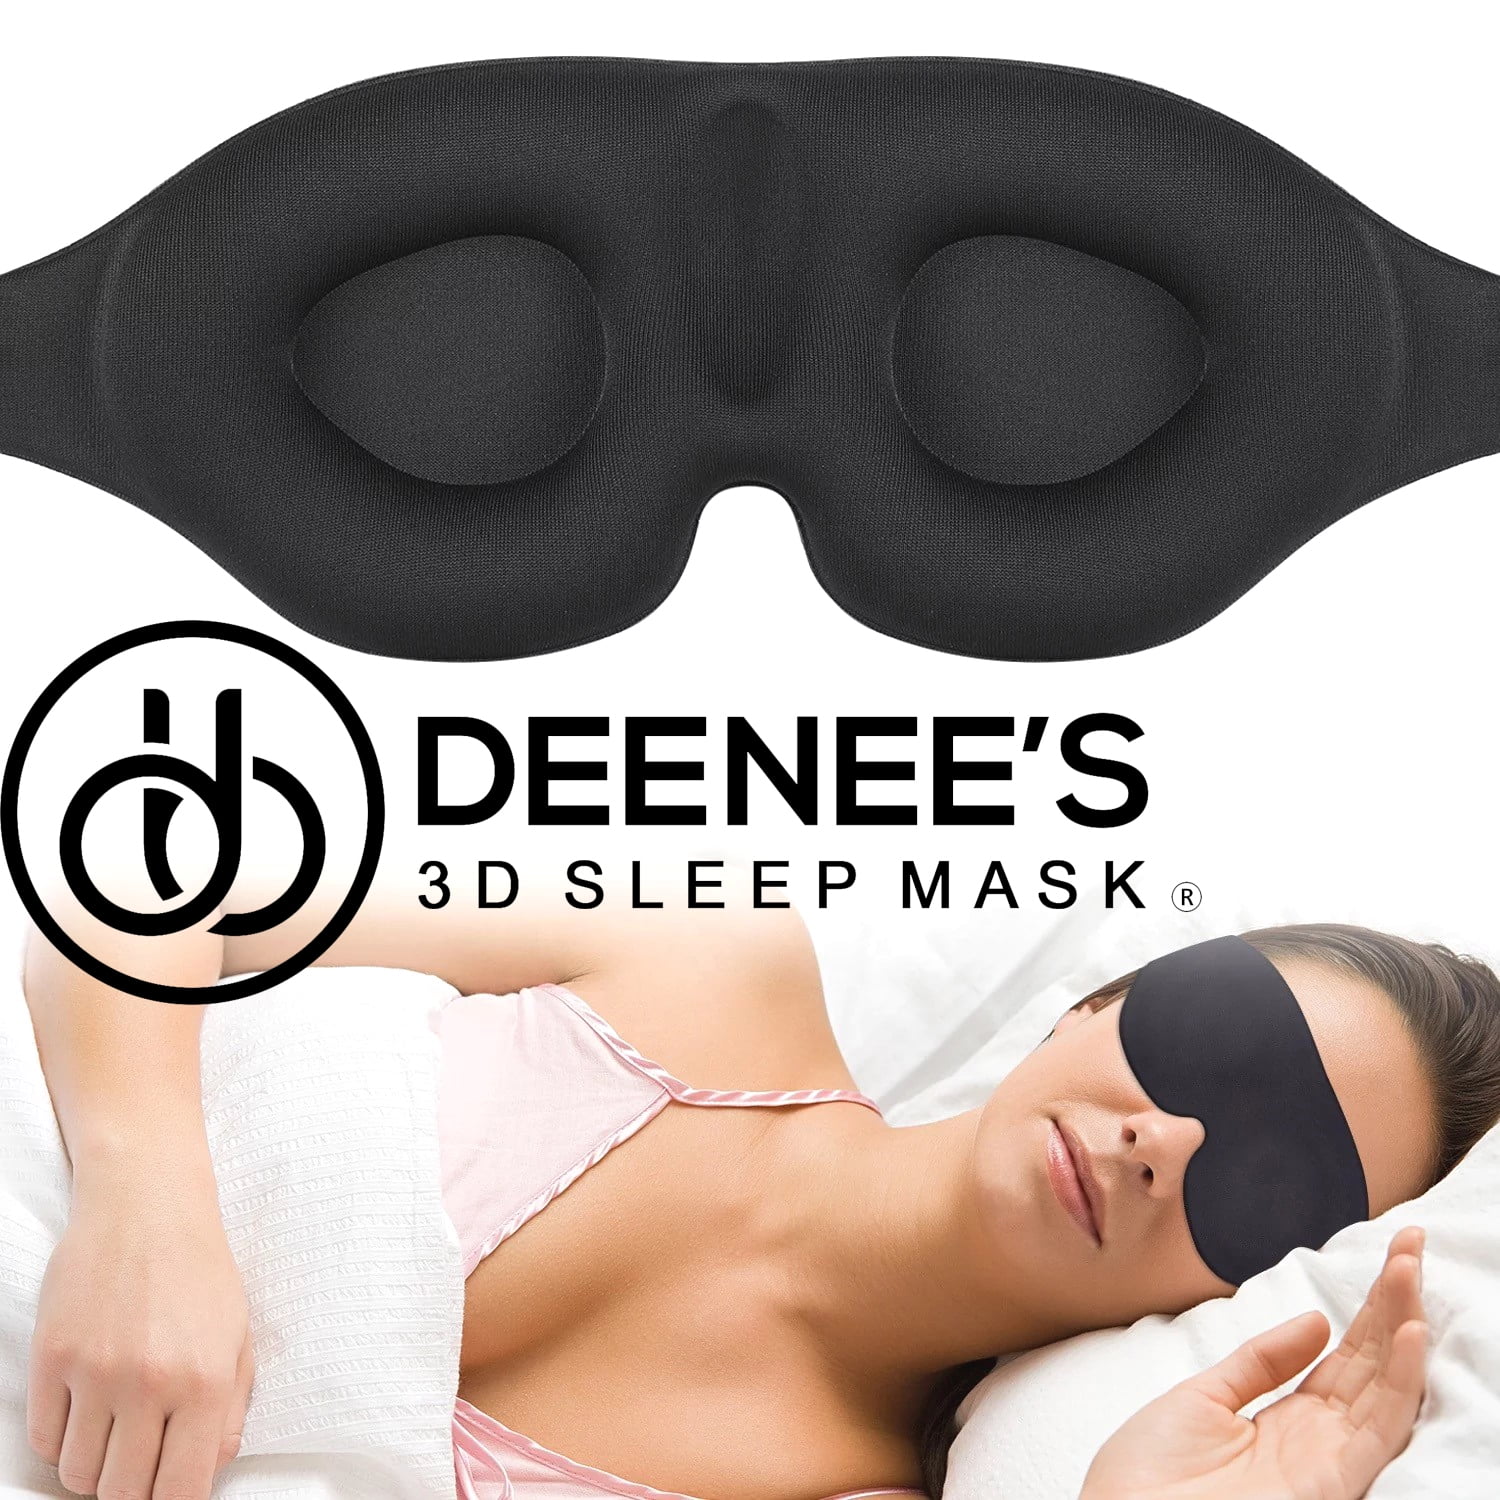 Deenee's Sleep Mask for Women and Men, Eye Mask for Sleeping, Eye